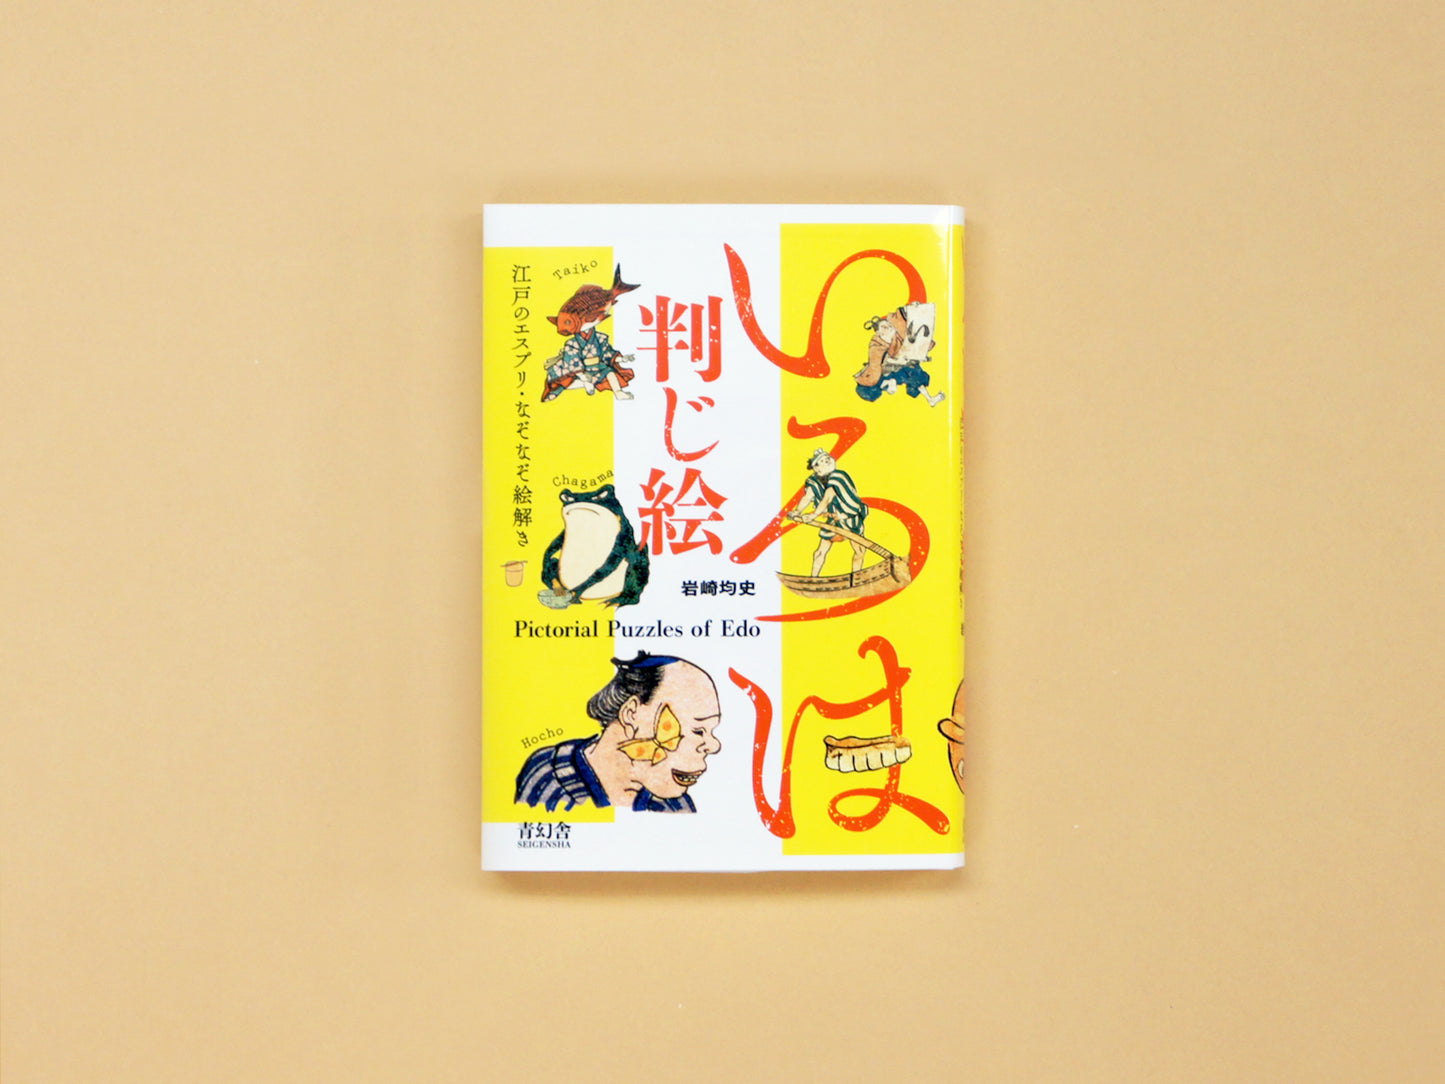 いろは判じ絵 —江戸のエスプリ・なぞなぞ絵解き Iroha Hanji-e: Pictorial Puzzles of Edo